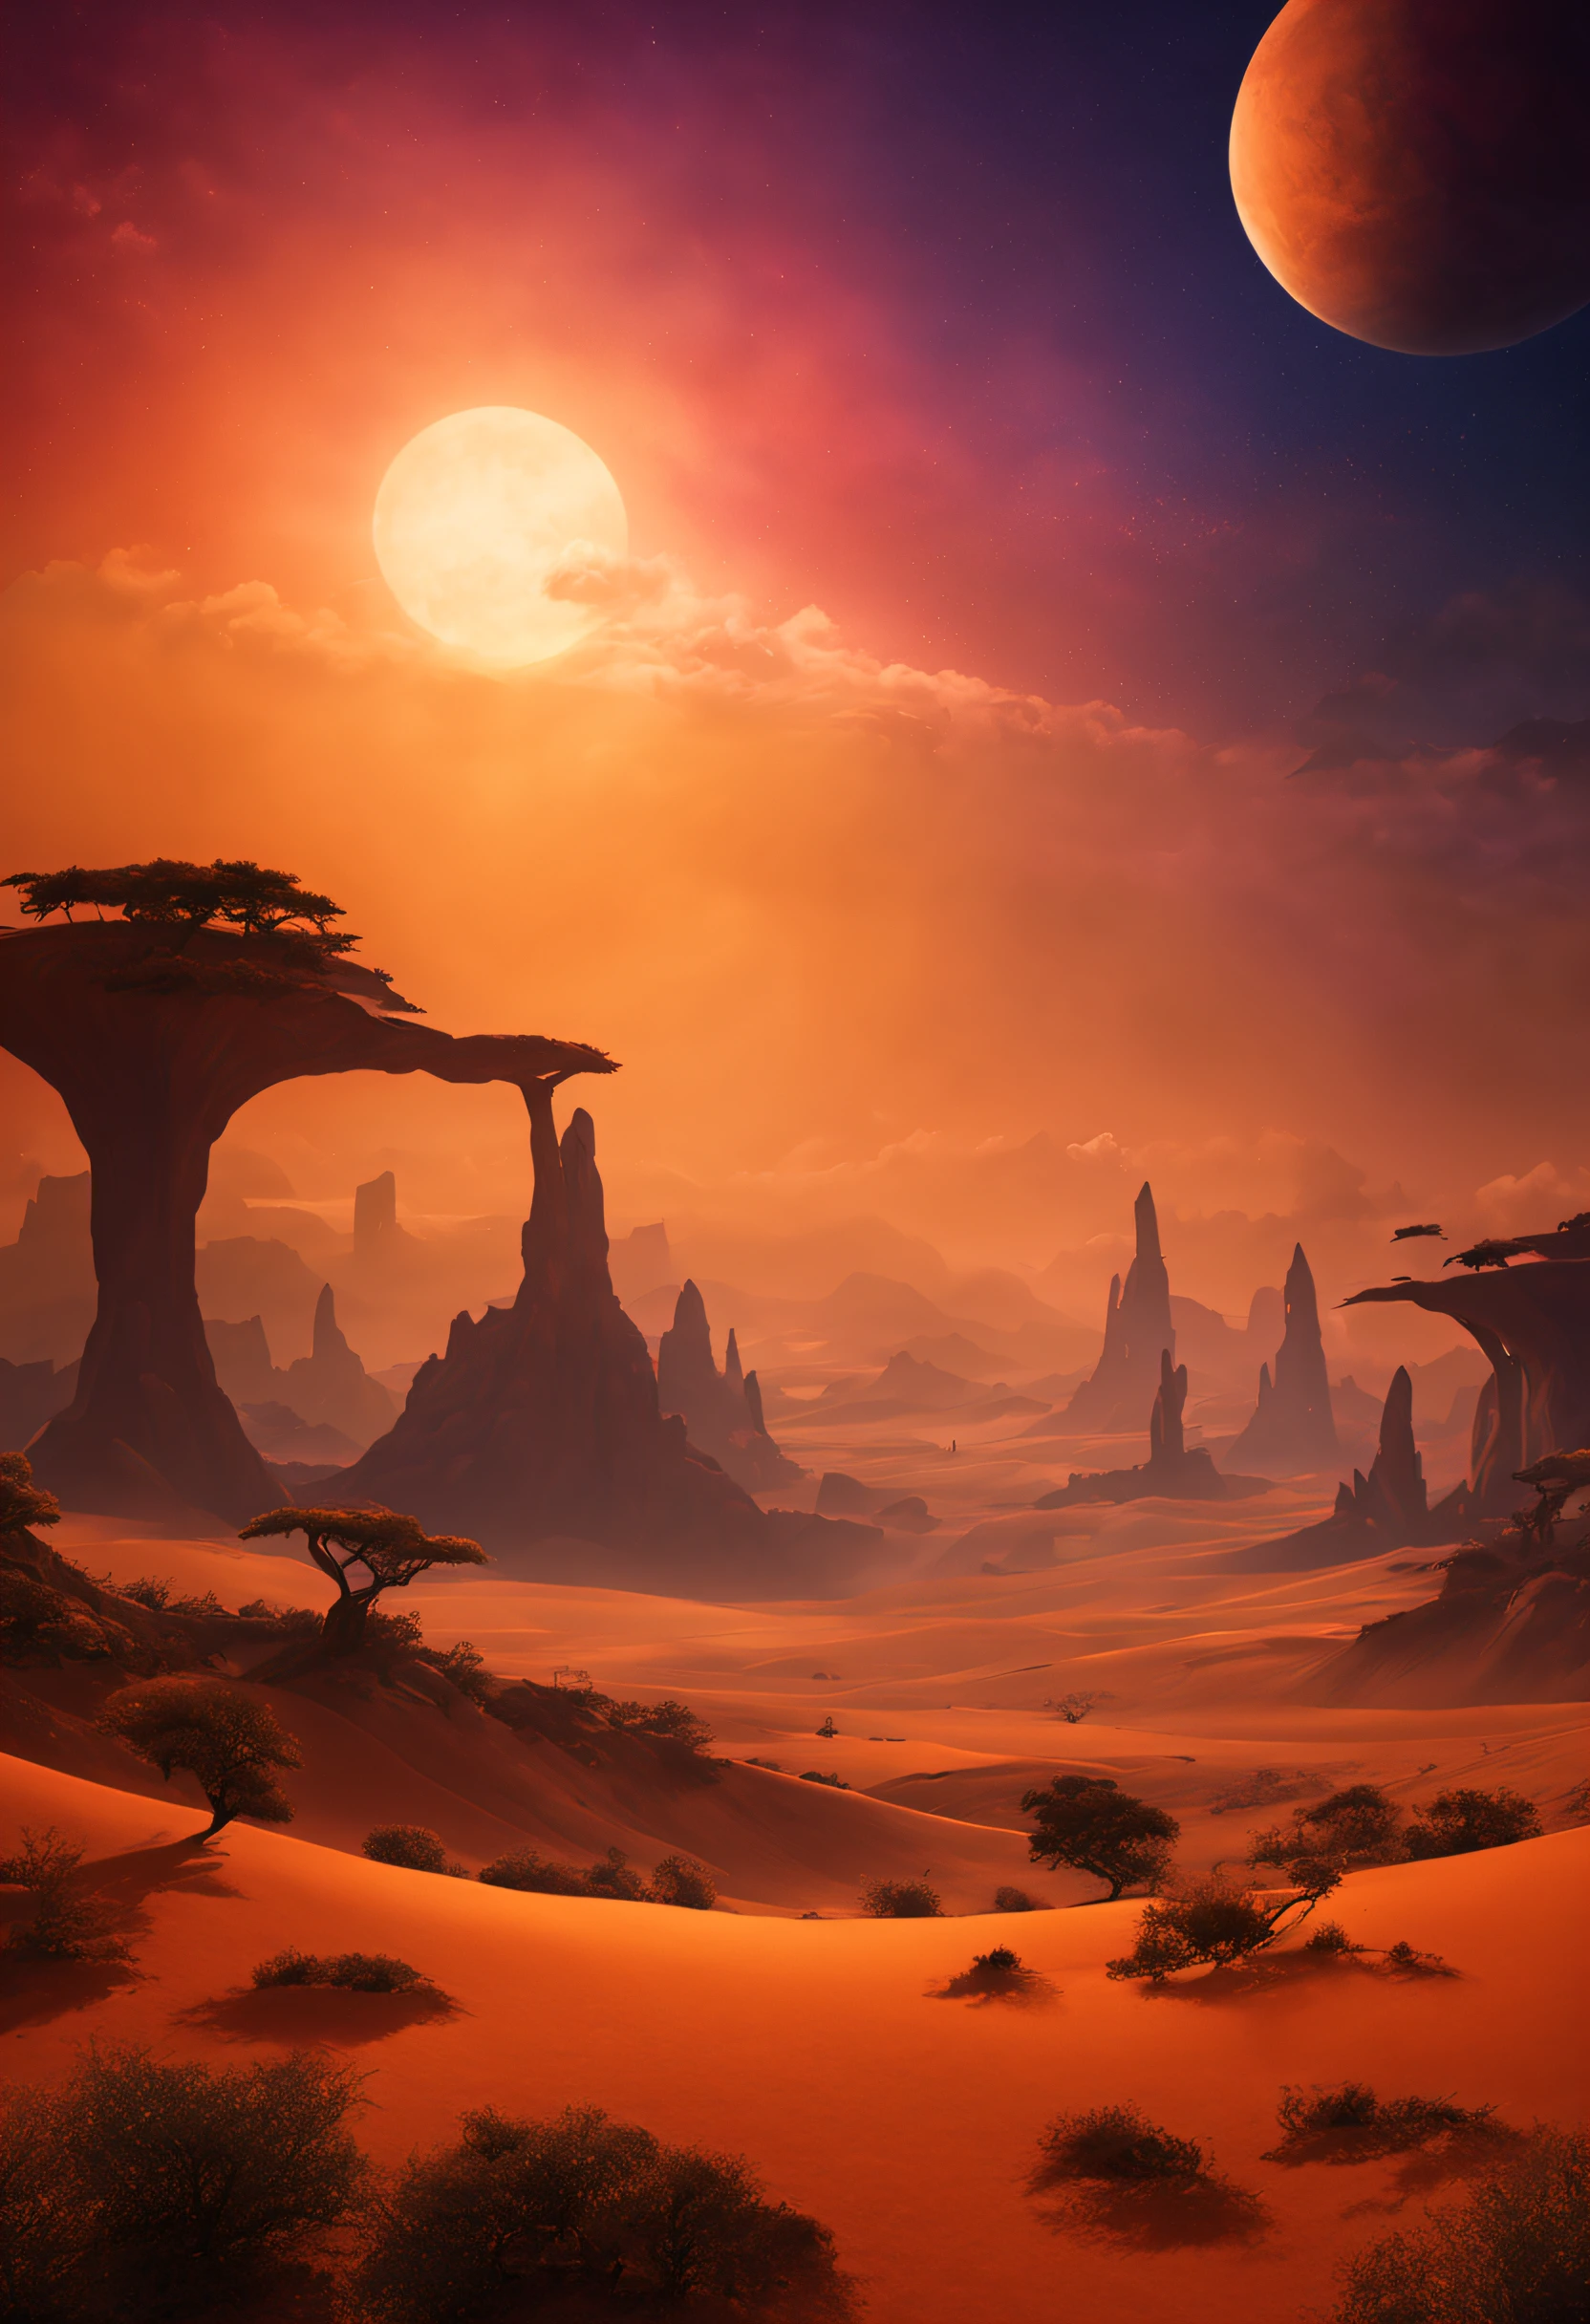 Un magnifique paysage imaginaire sur une planète exotique avec beaucoup de couchers de soleil colorés et un vent extraordinaire couleur poussière